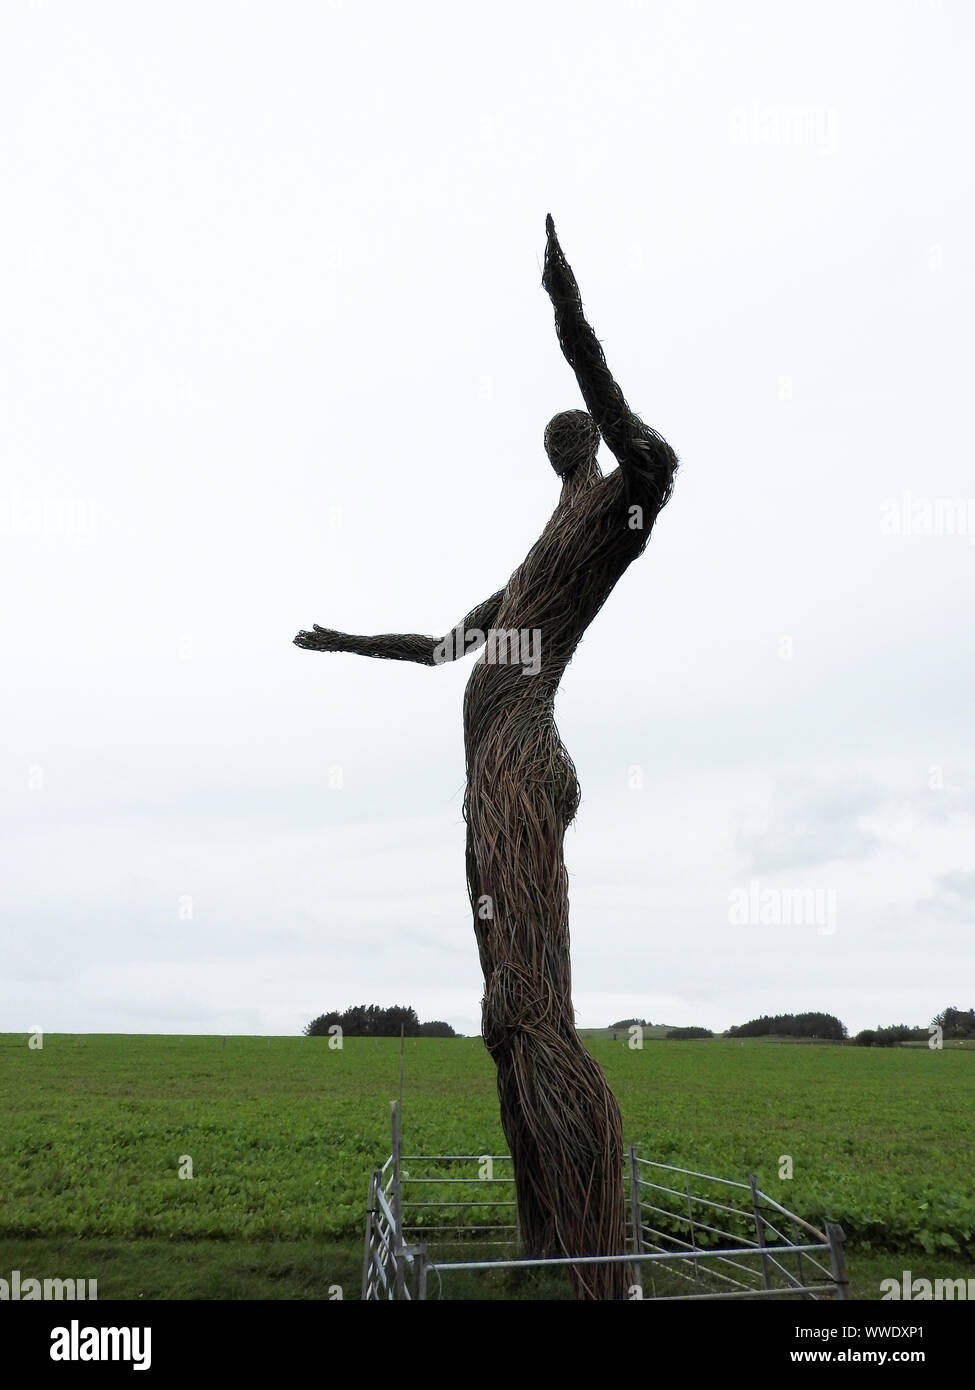 2019 immagine - una vista laterale del nuovo gigantesco Wickerman figura nel Festival Wickerman campo nei pressi di Dundrennan, Dumfries e Galloway. (Circondato da un normale gli agricoltori recinto) Foto Stock